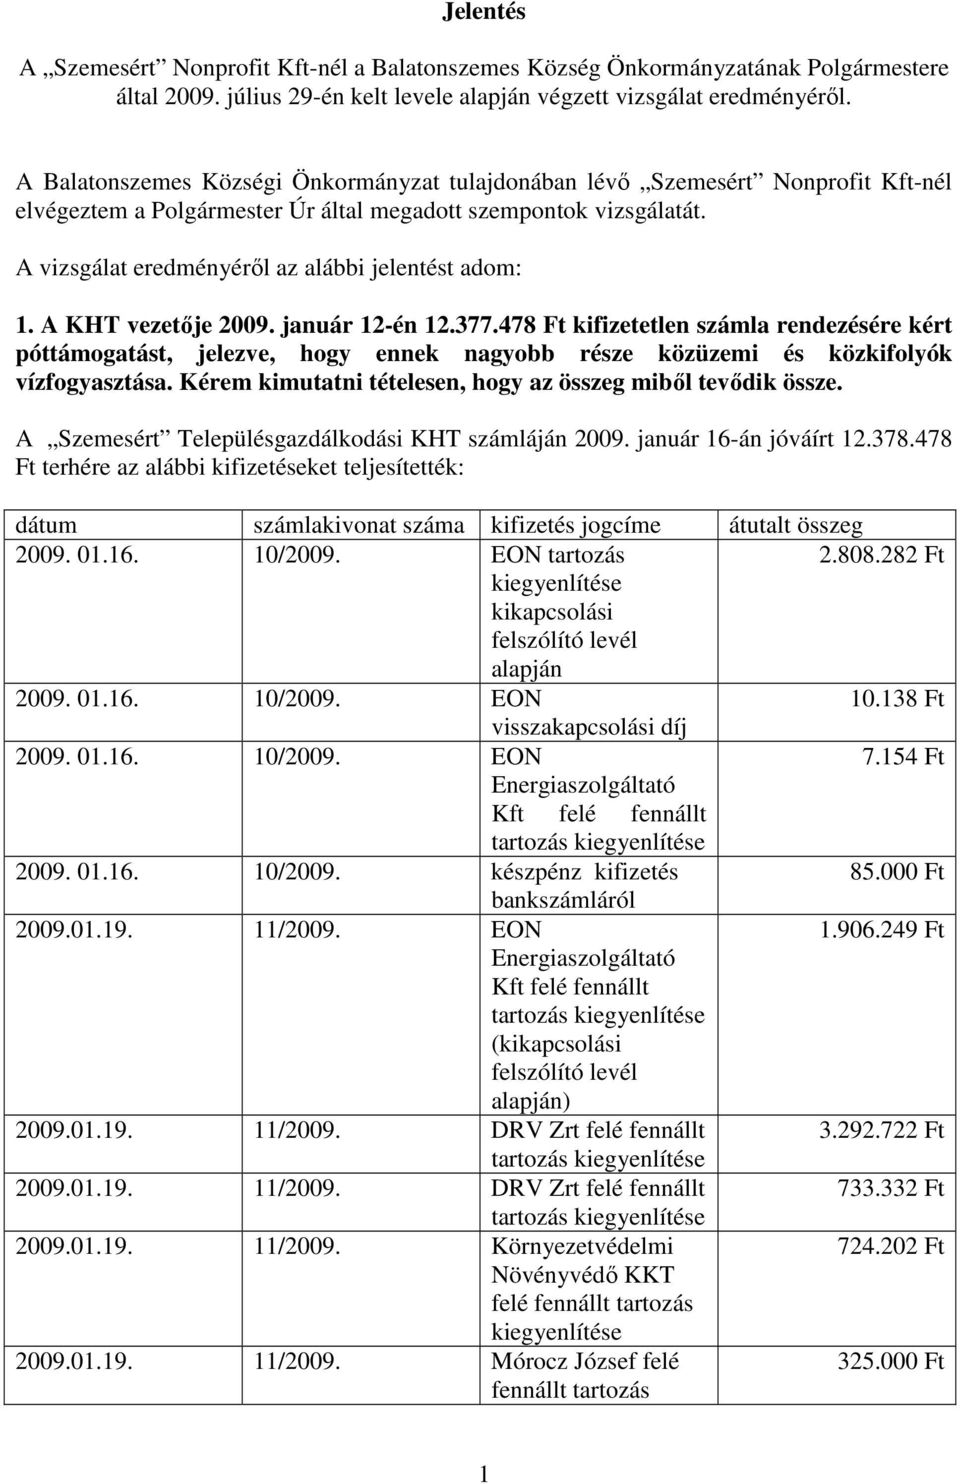 A vizsgálat eredményérıl az alábbi jelentést adom: 1. A KHT vezetıje 2009. január 12-én 12.377.